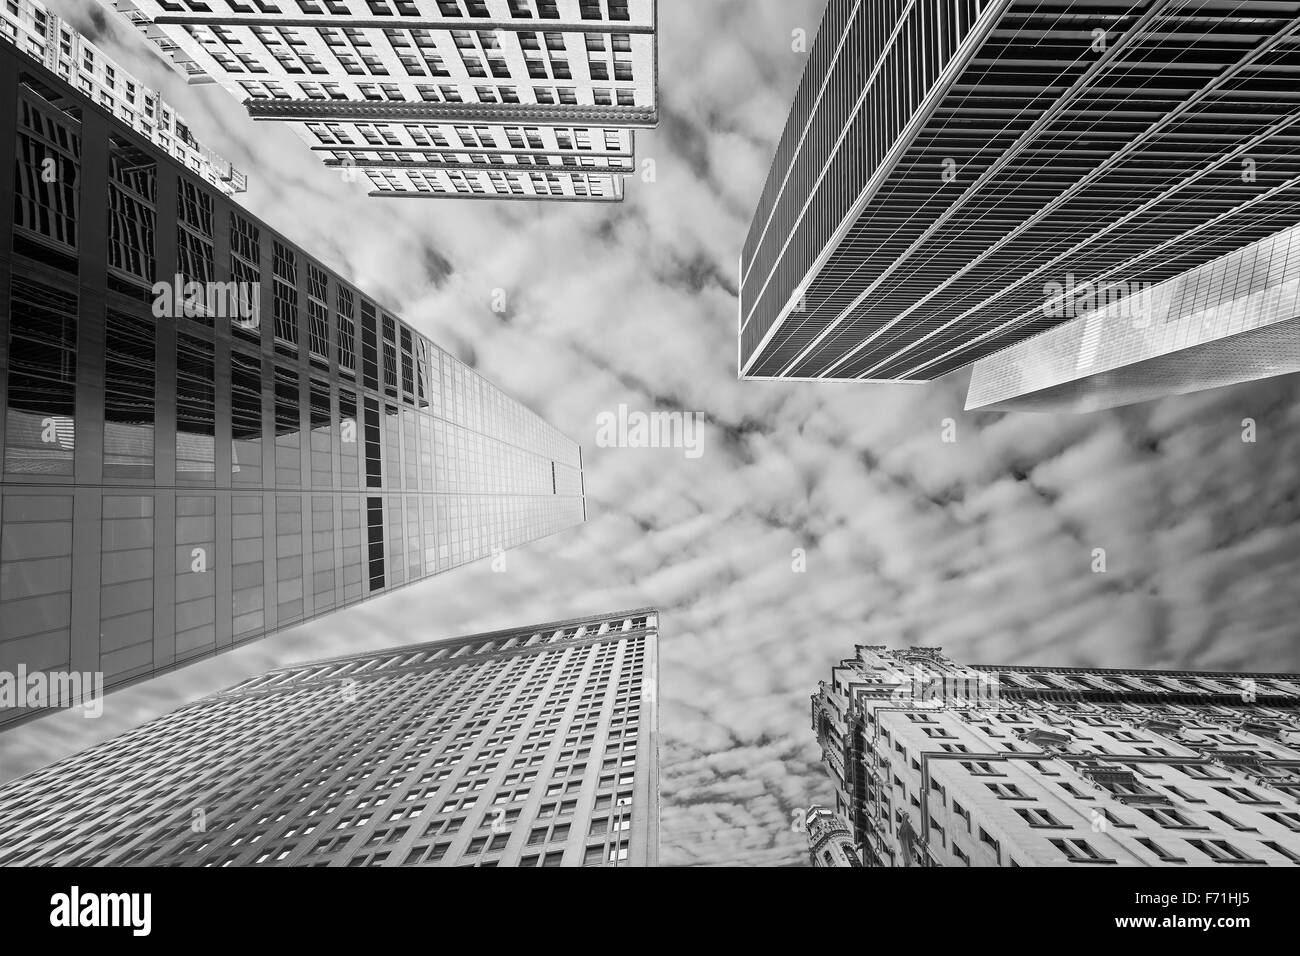 Noir et blanc photo de gratte-ciel de New York, USA. Banque D'Images